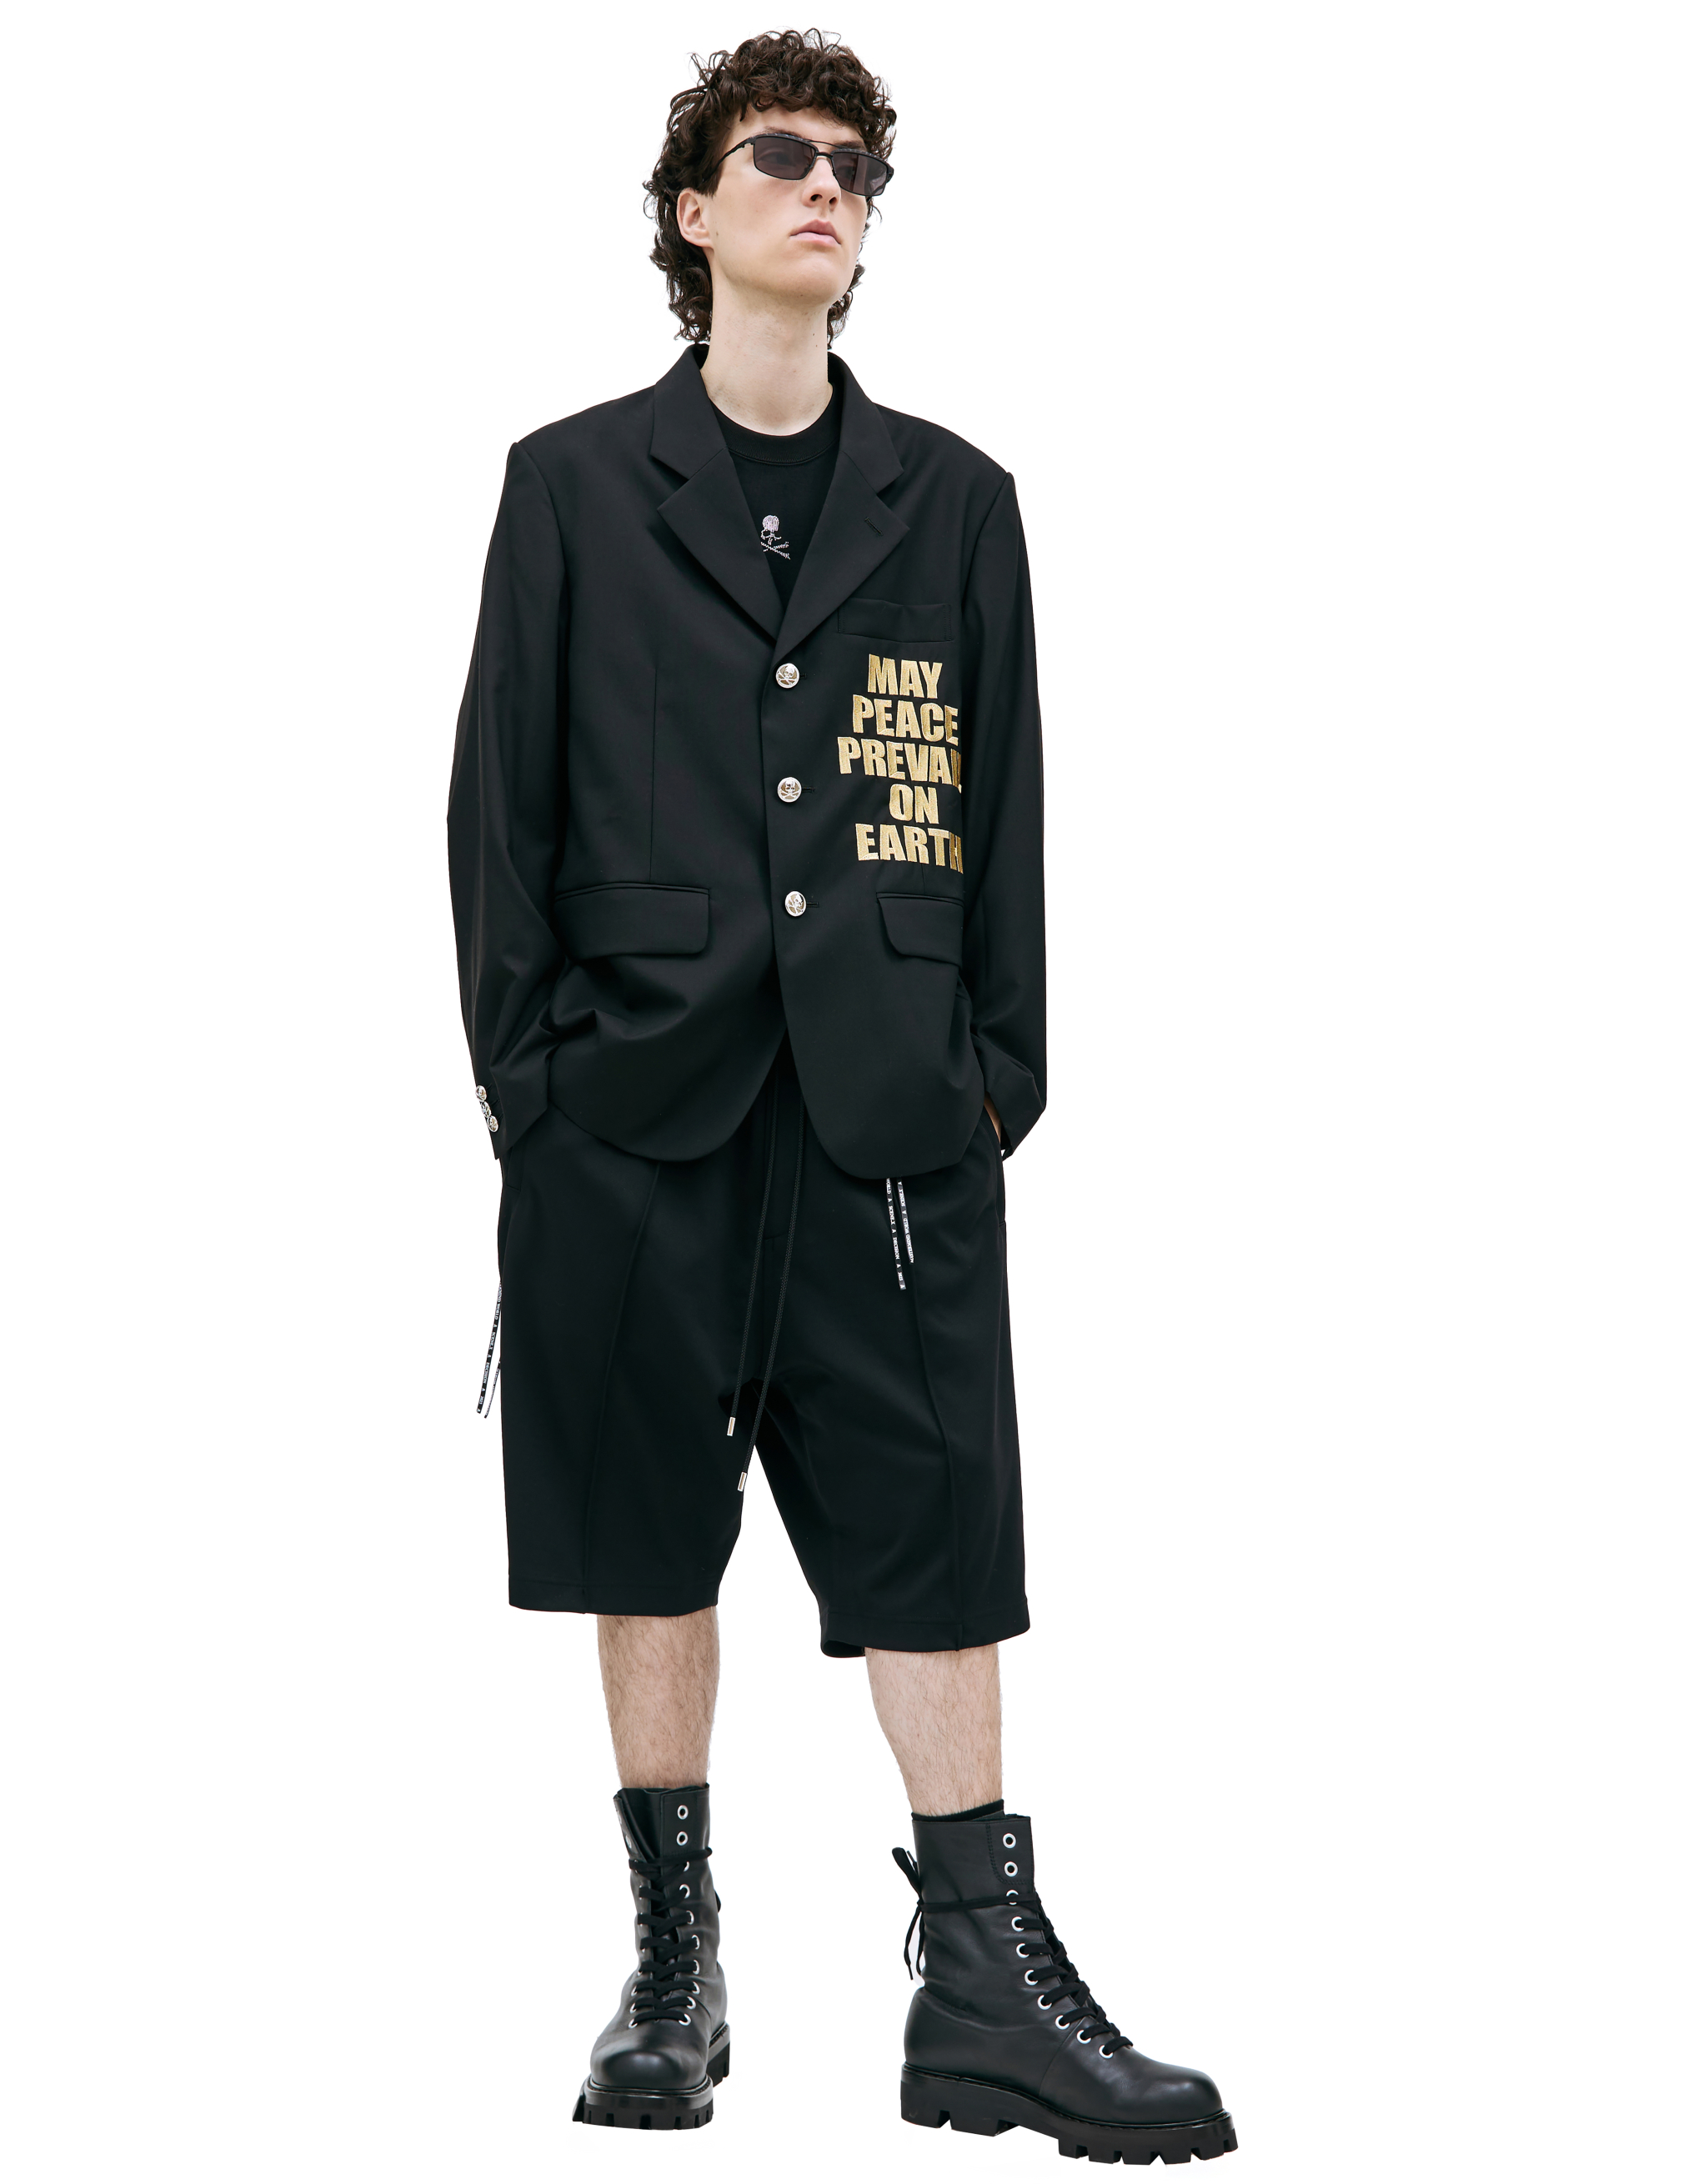 Однобортный пиджак с вышивкой May Peace Mastermind WORLD MW23S10-JA002, размер L;XL